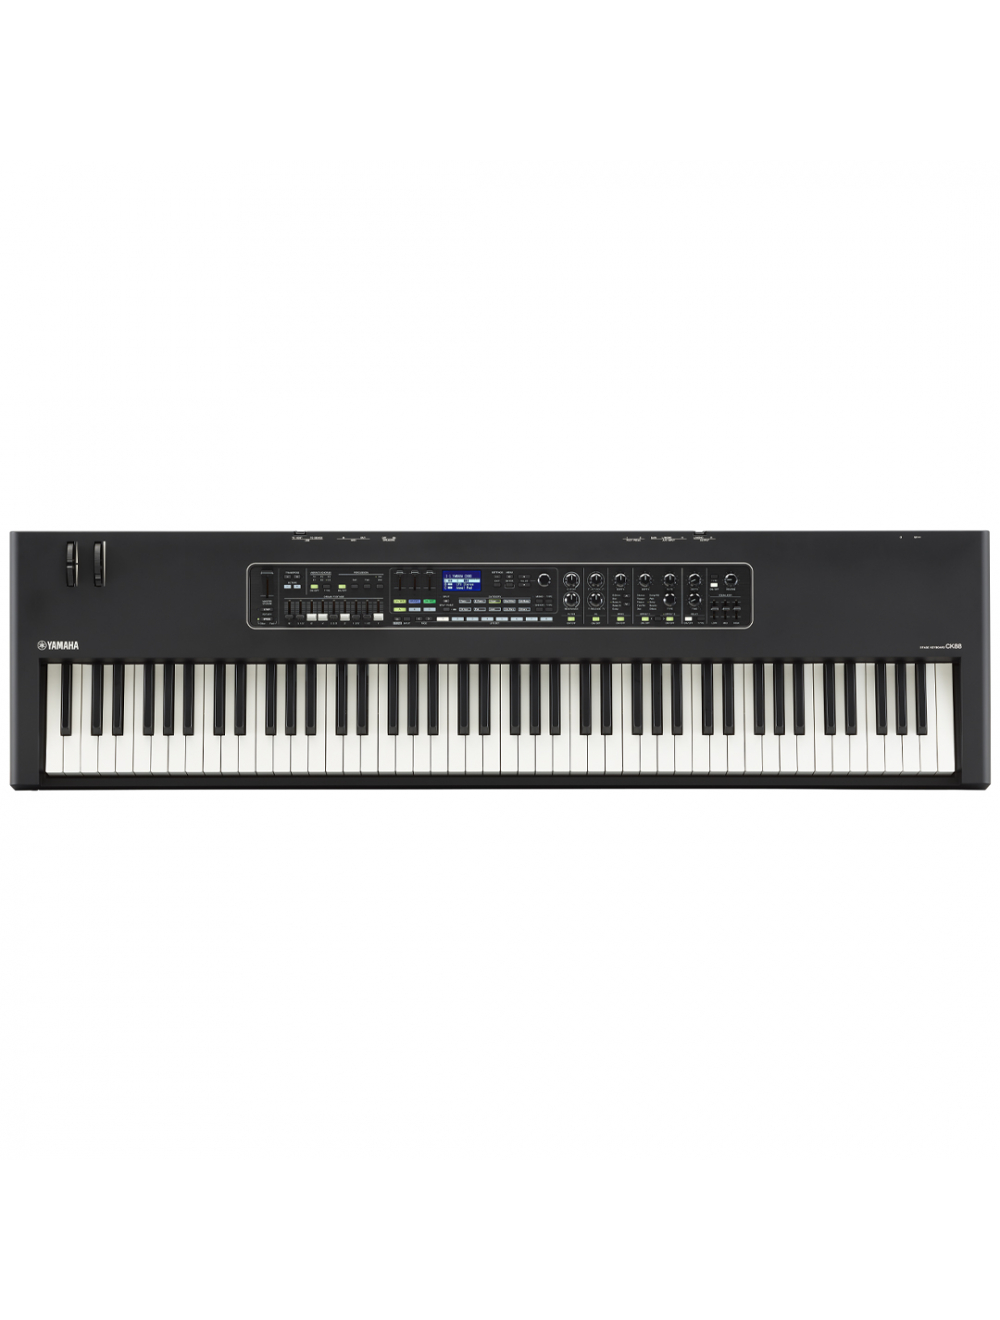 Workstation　Synthesizer　88　Yamaha　Keys　CK88　With